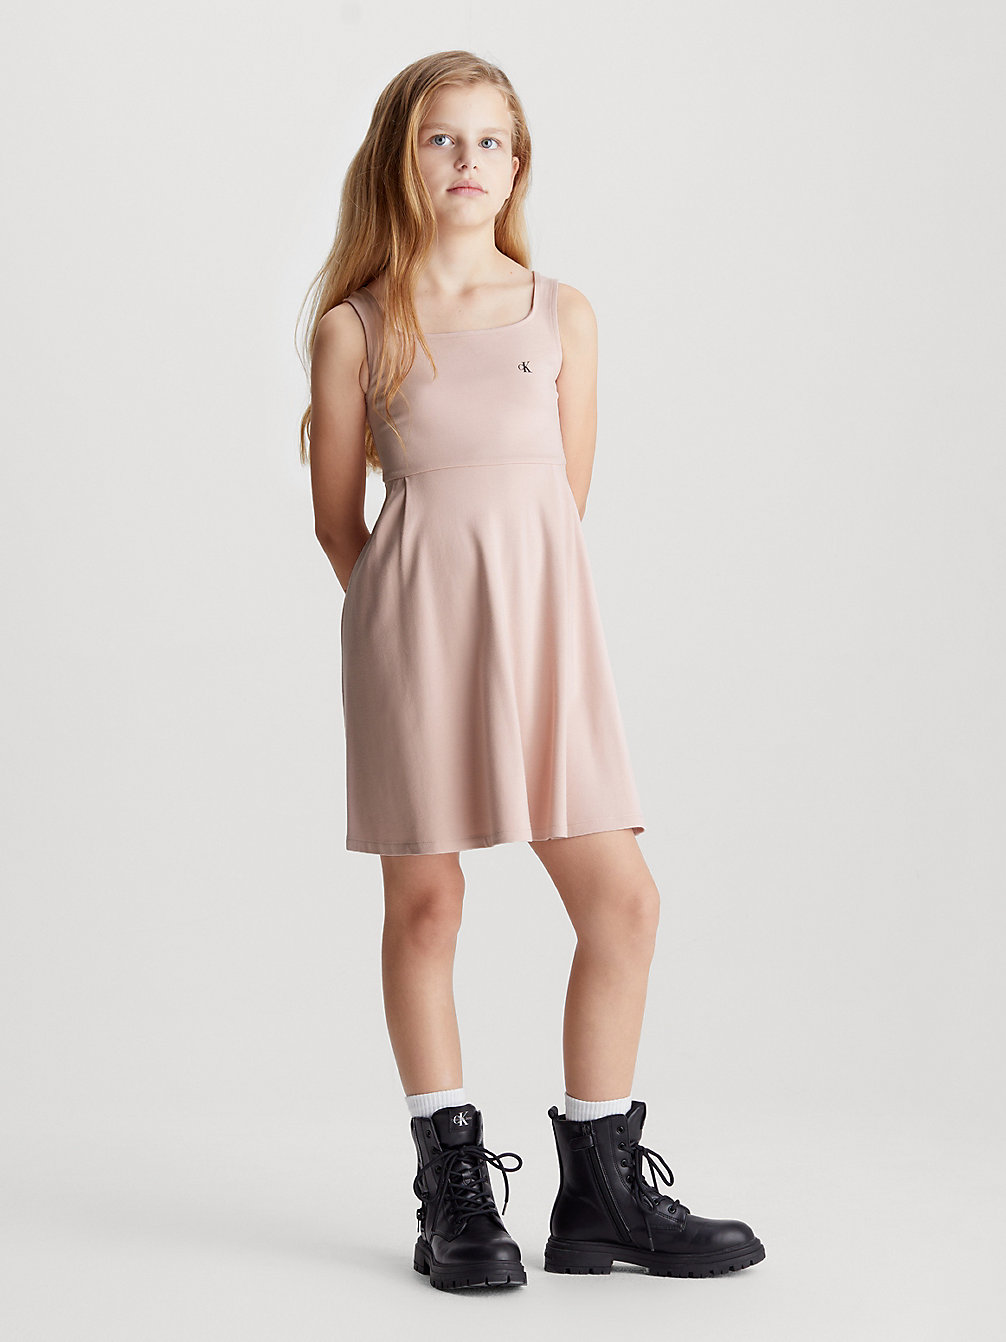 SEPIA ROSE Kleid Aus Milano-Jersey Mit Überkreuztem Rückendesign undefined Mädchen Calvin Klein